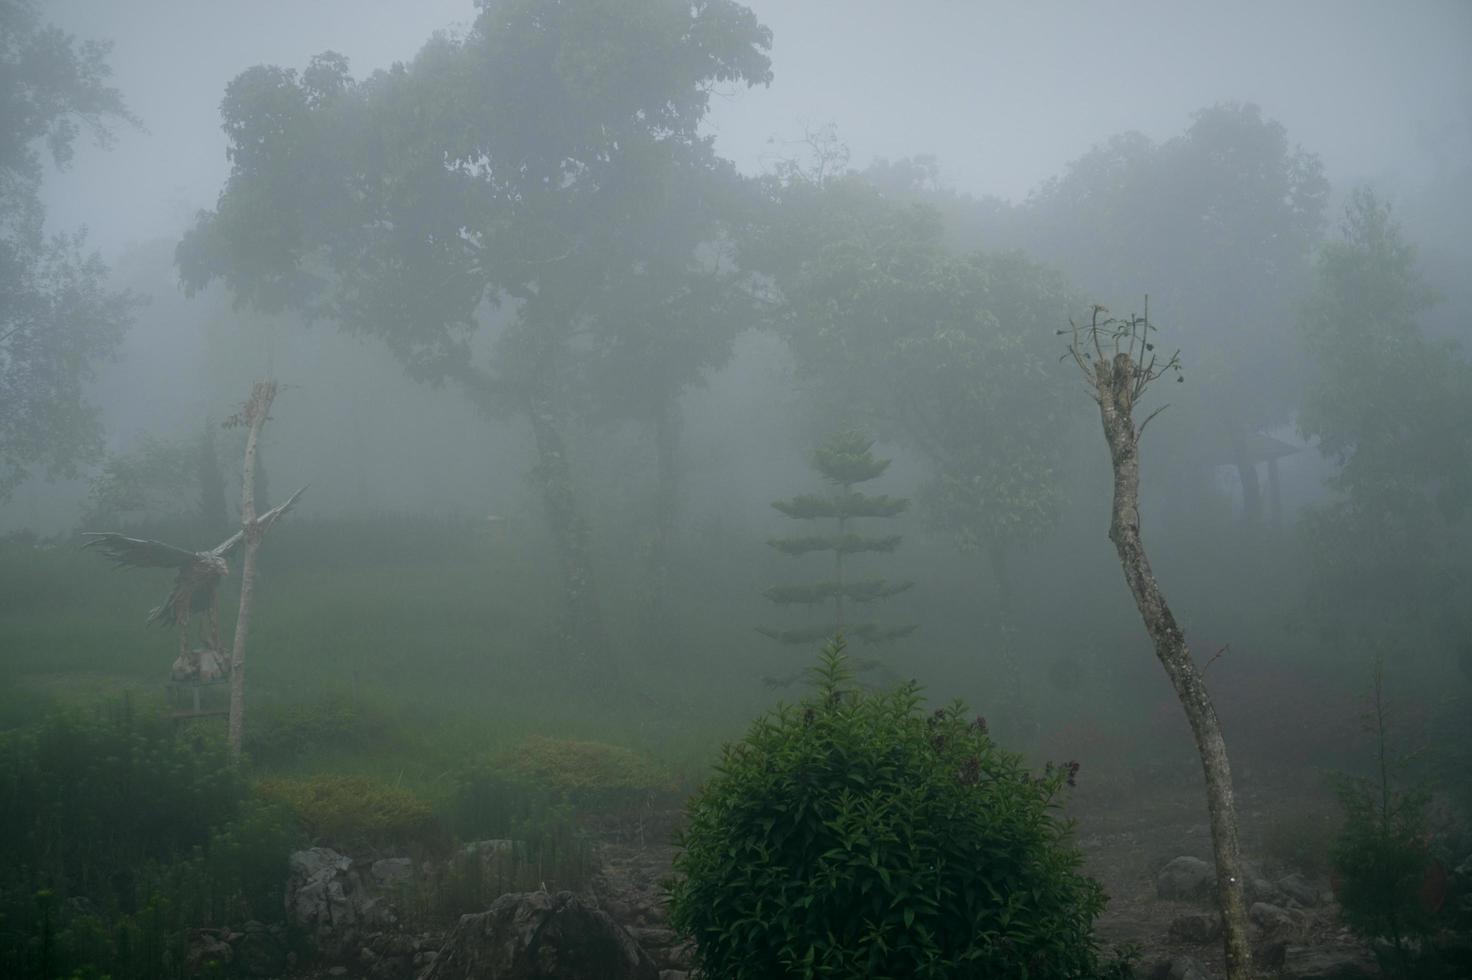 floresta na névoa com névoa. floresta de aparência assustadora de fadas em um dia enevoado. manhã fria e nublada na floresta de horror com árvores foto